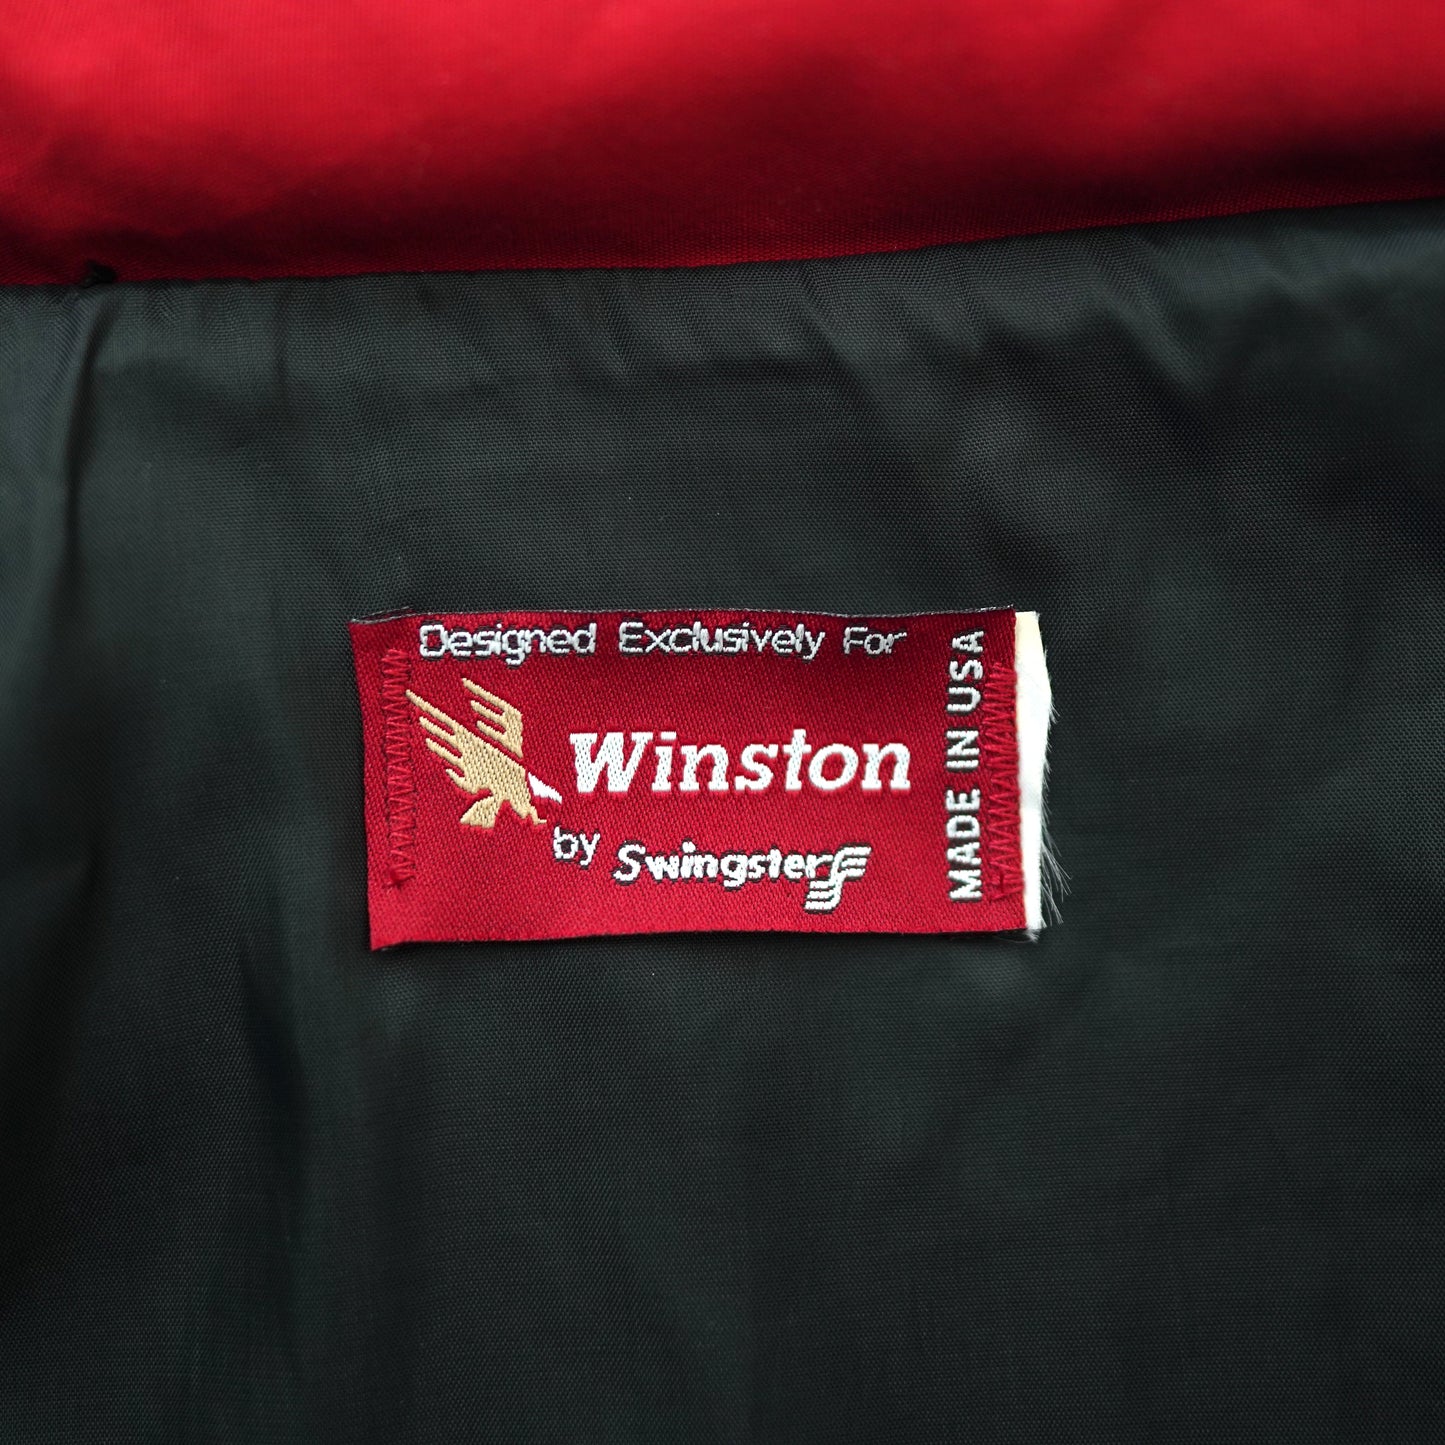 Winston Racing Team jacket